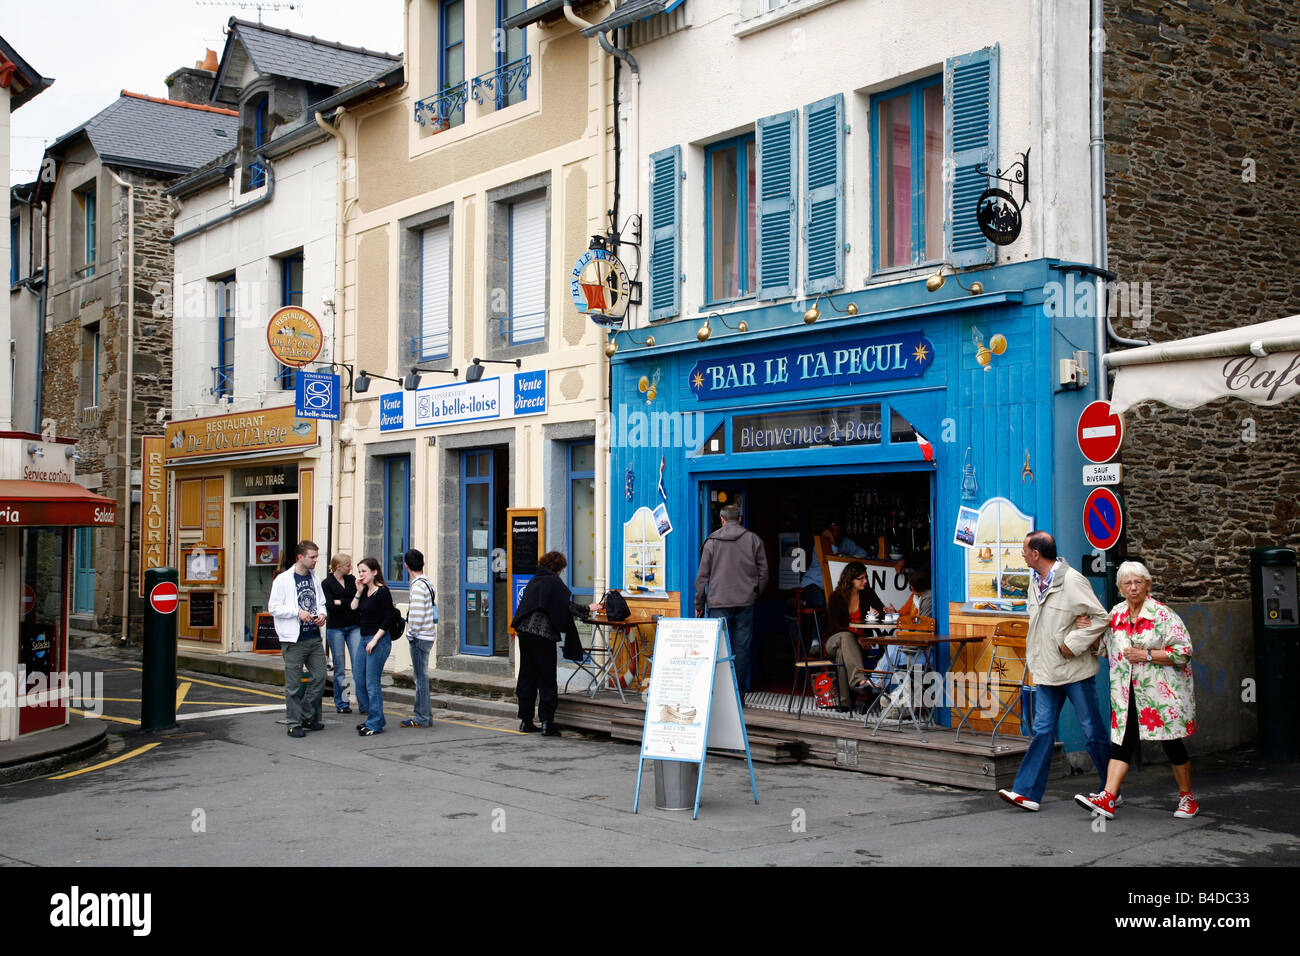 Juli 2008 - Restaurant im Hafen von Cancale Brittany France Stockfoto